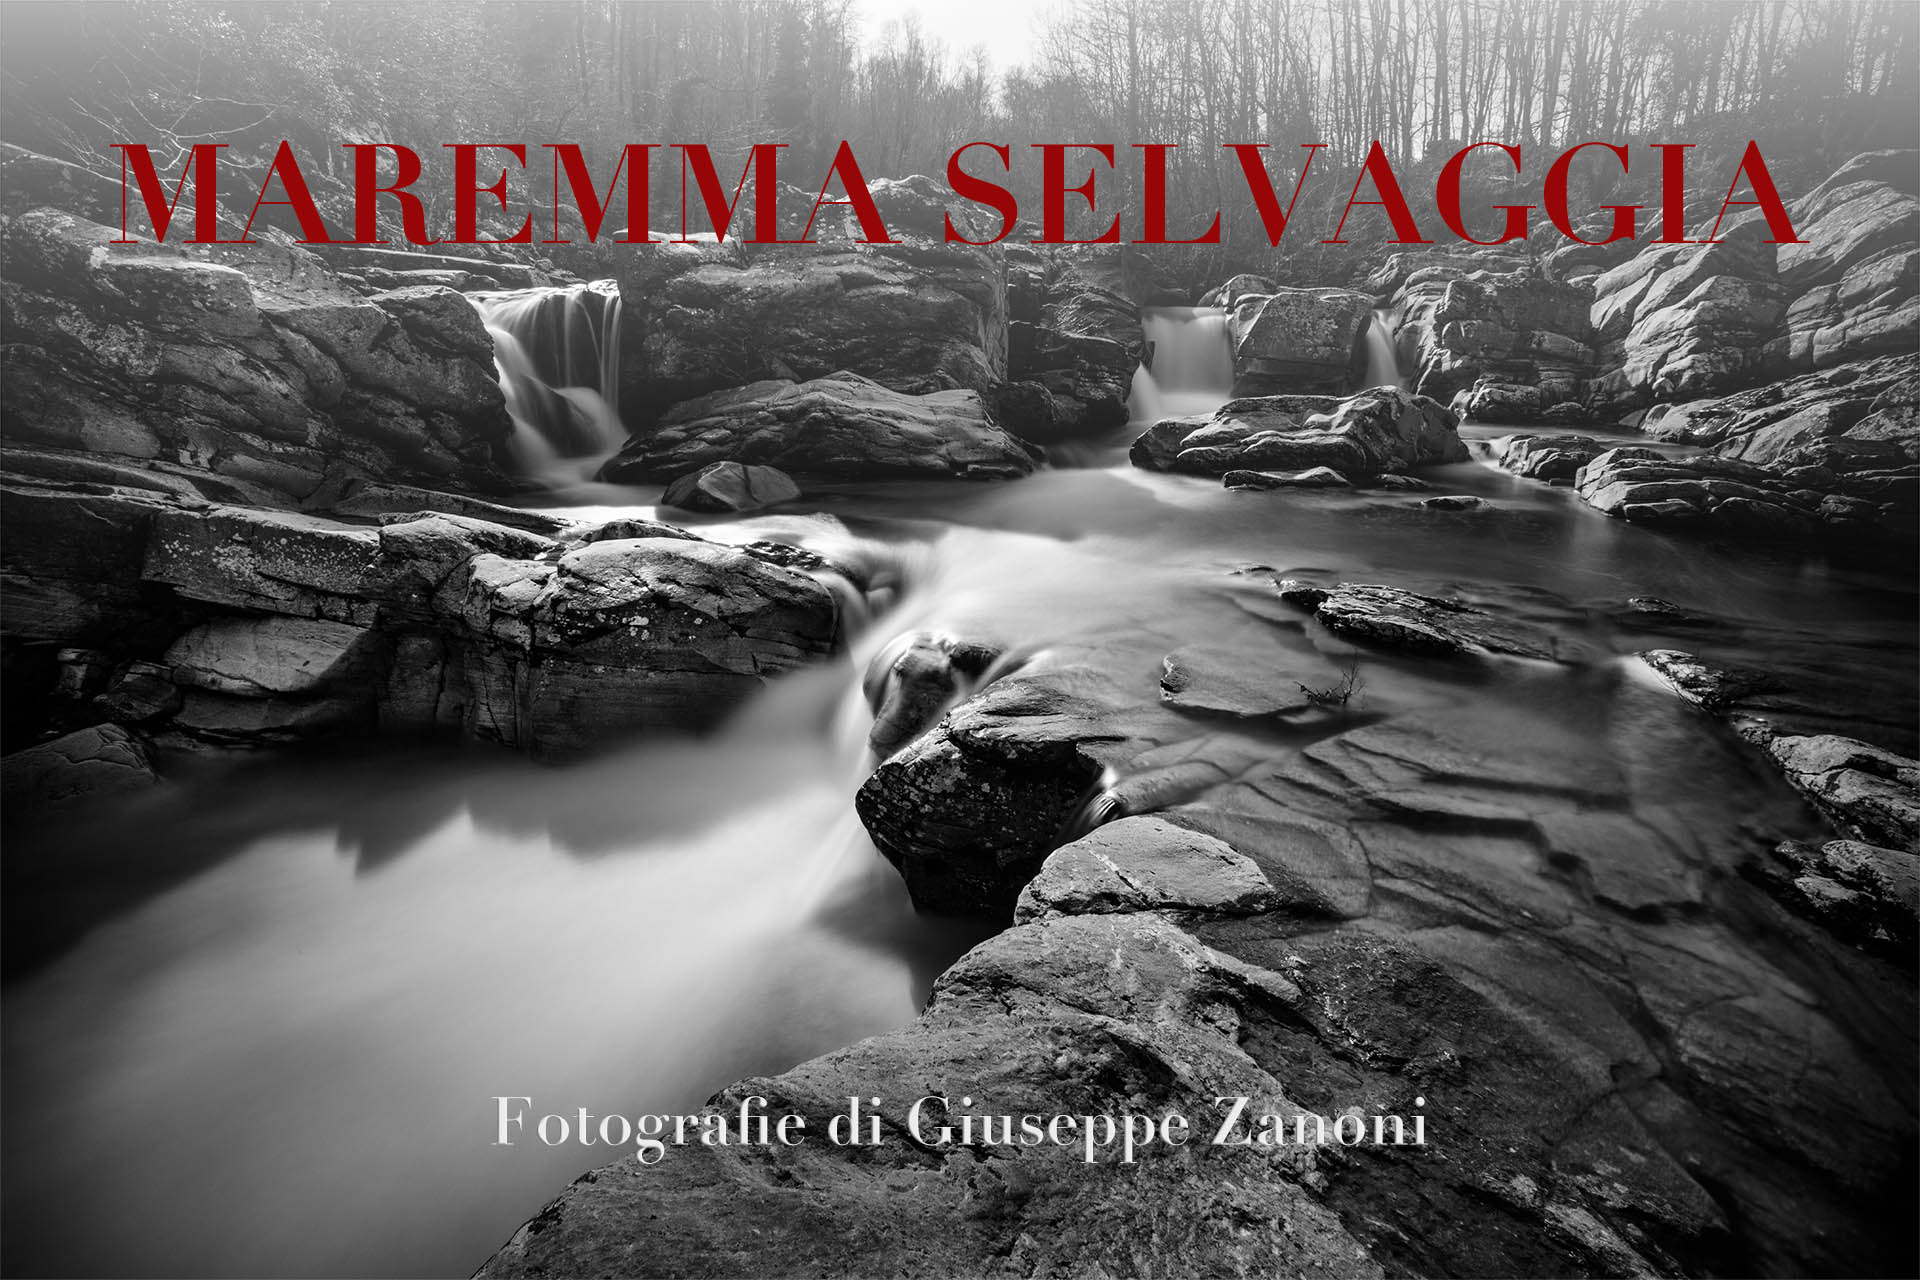 Libro fotografico “MAREMMA SELVAGGIA” 30×45 cm